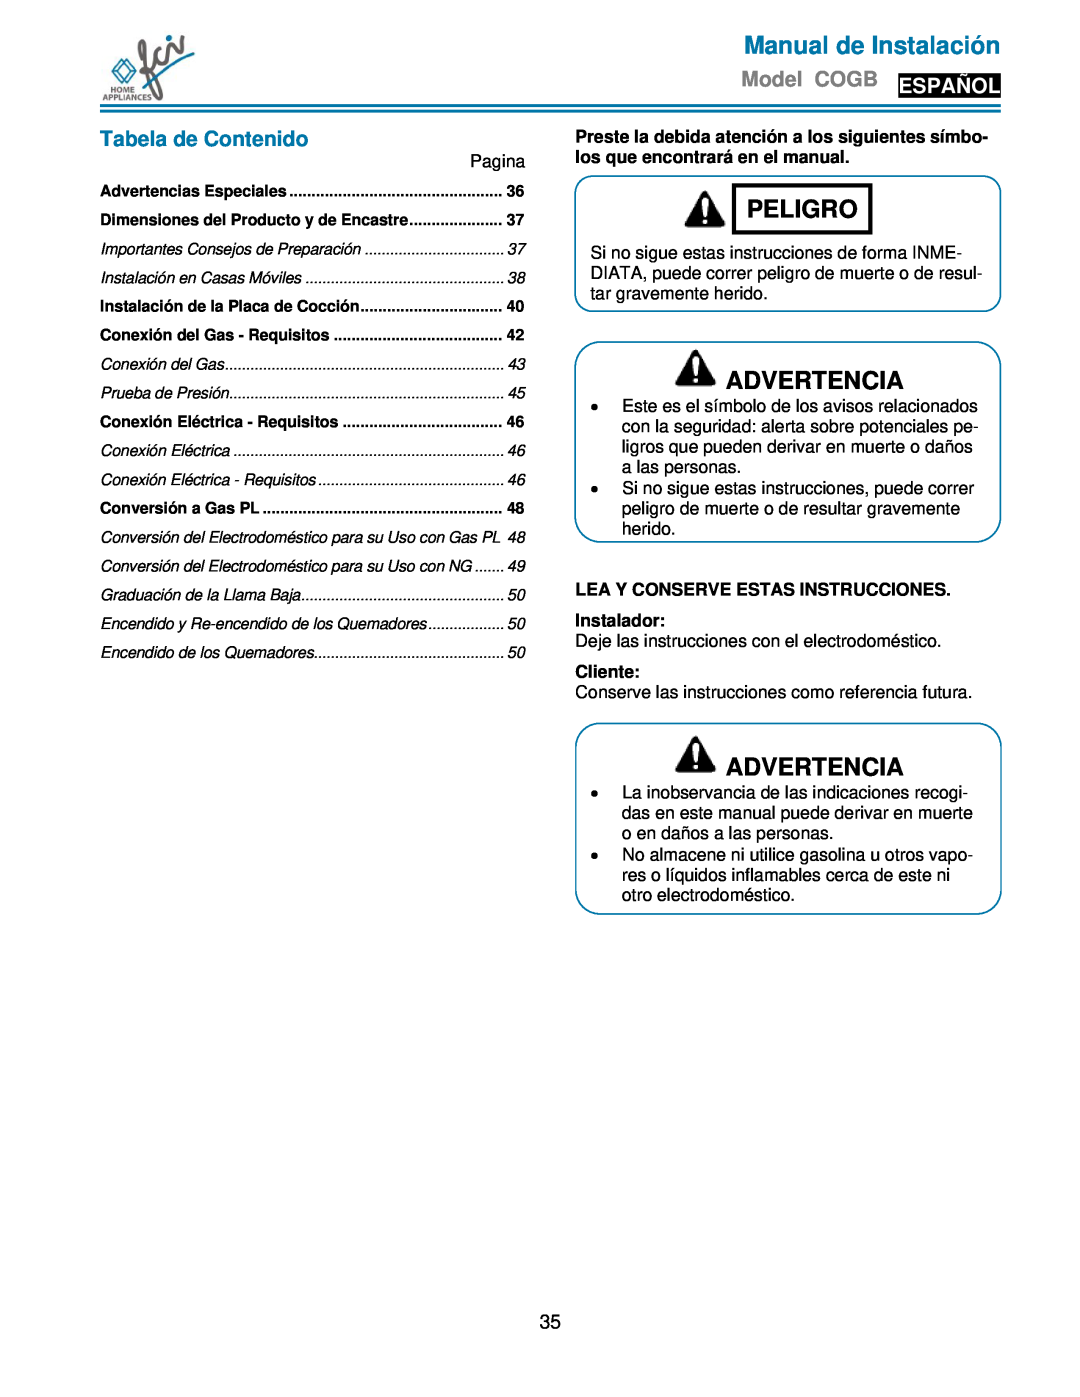 FCI Home Appliances COGB 33062/L/SS Manual de Instalación, Peligro, Advertencia, Model COGB ESPAÑOL, Tabela de Contenido 